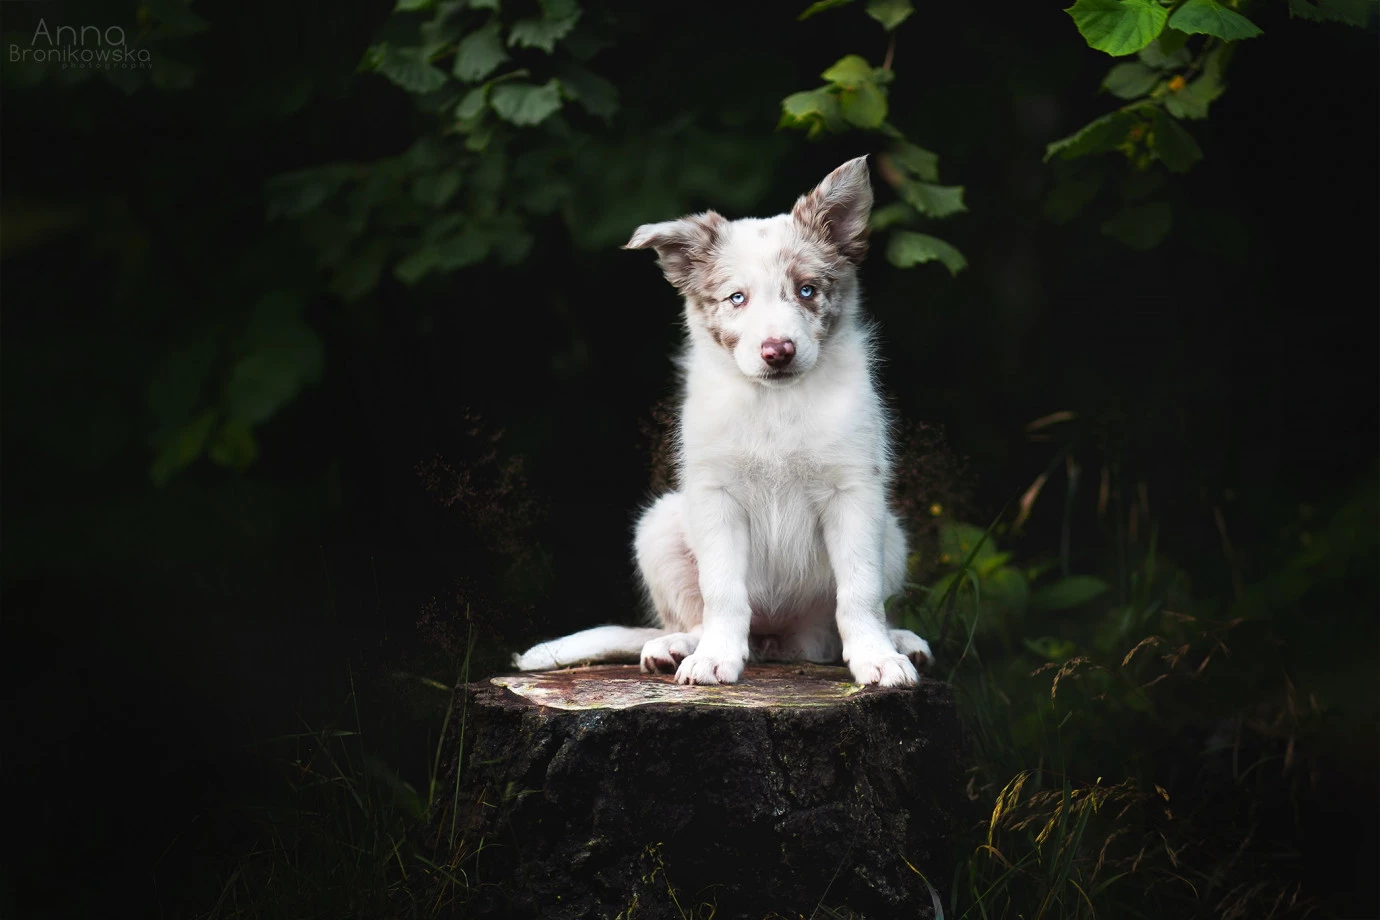 fotograf tarnowskie-gory huskana-fotografia portfolio zdjecia zwierzat sesja zdjeciowa konie psy koty